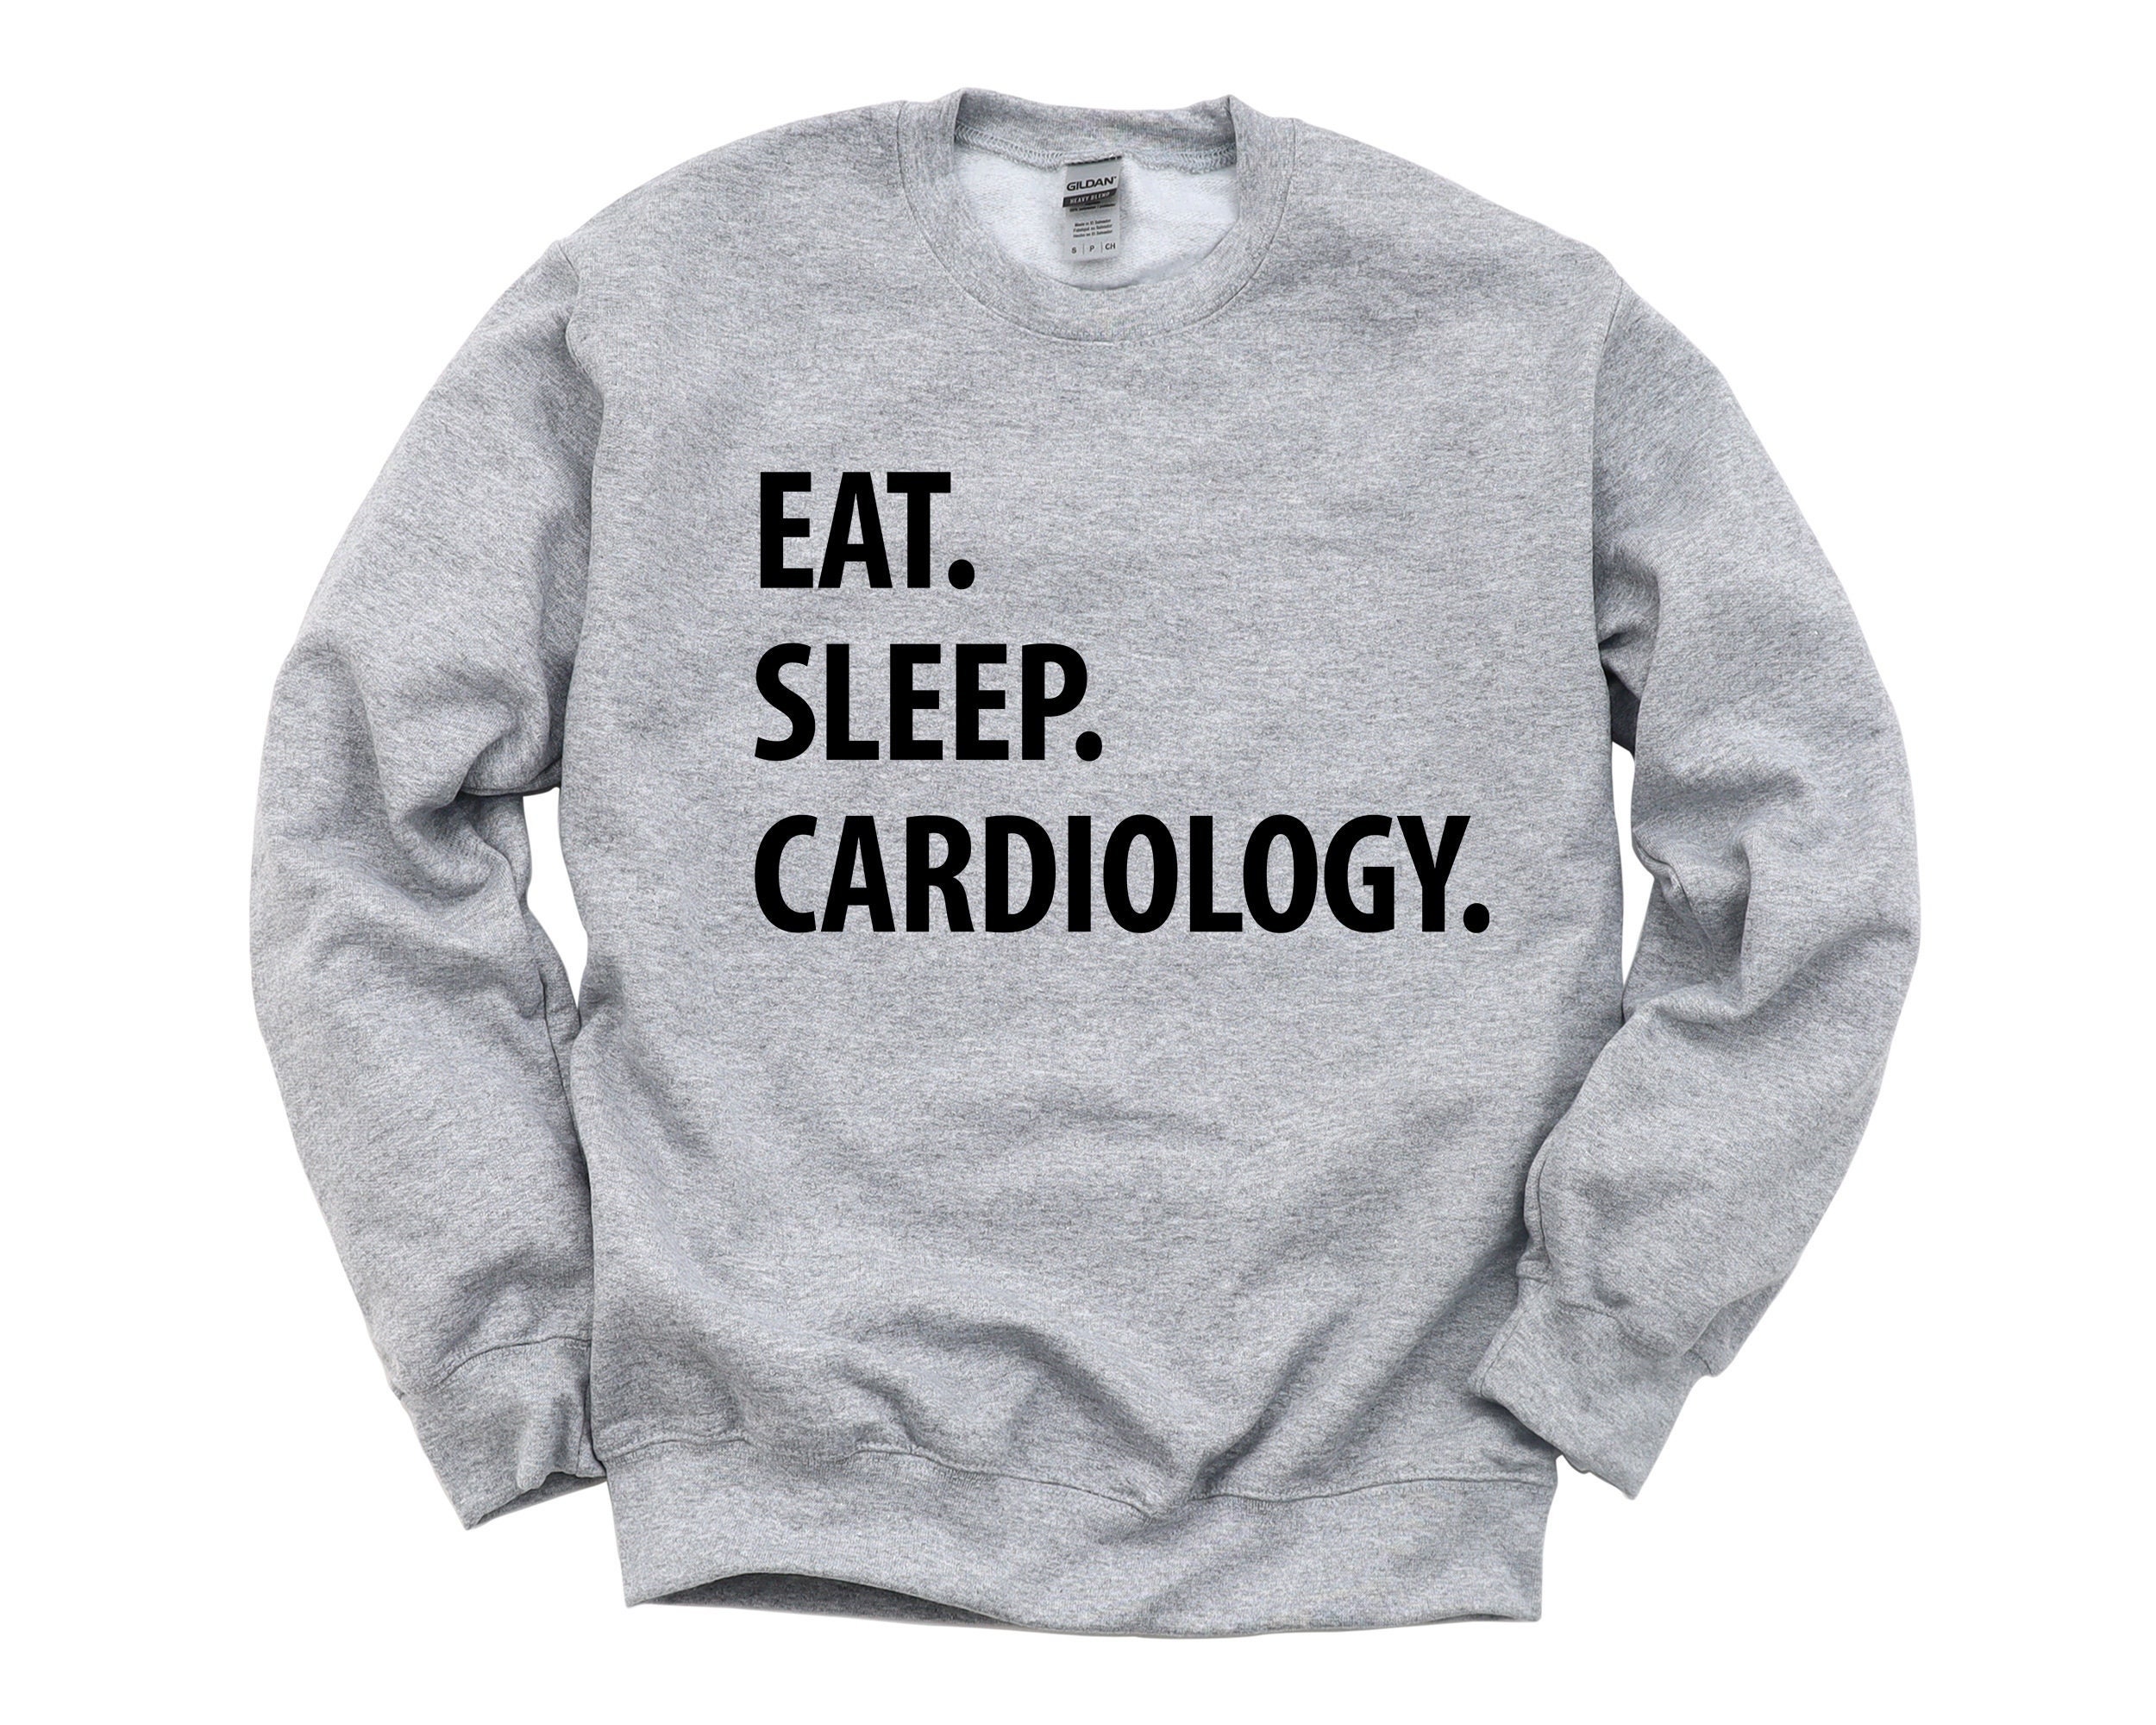 Cardiology Sweater, Cardiologist Gift, Eat Sleep Sweatshirt - 1262